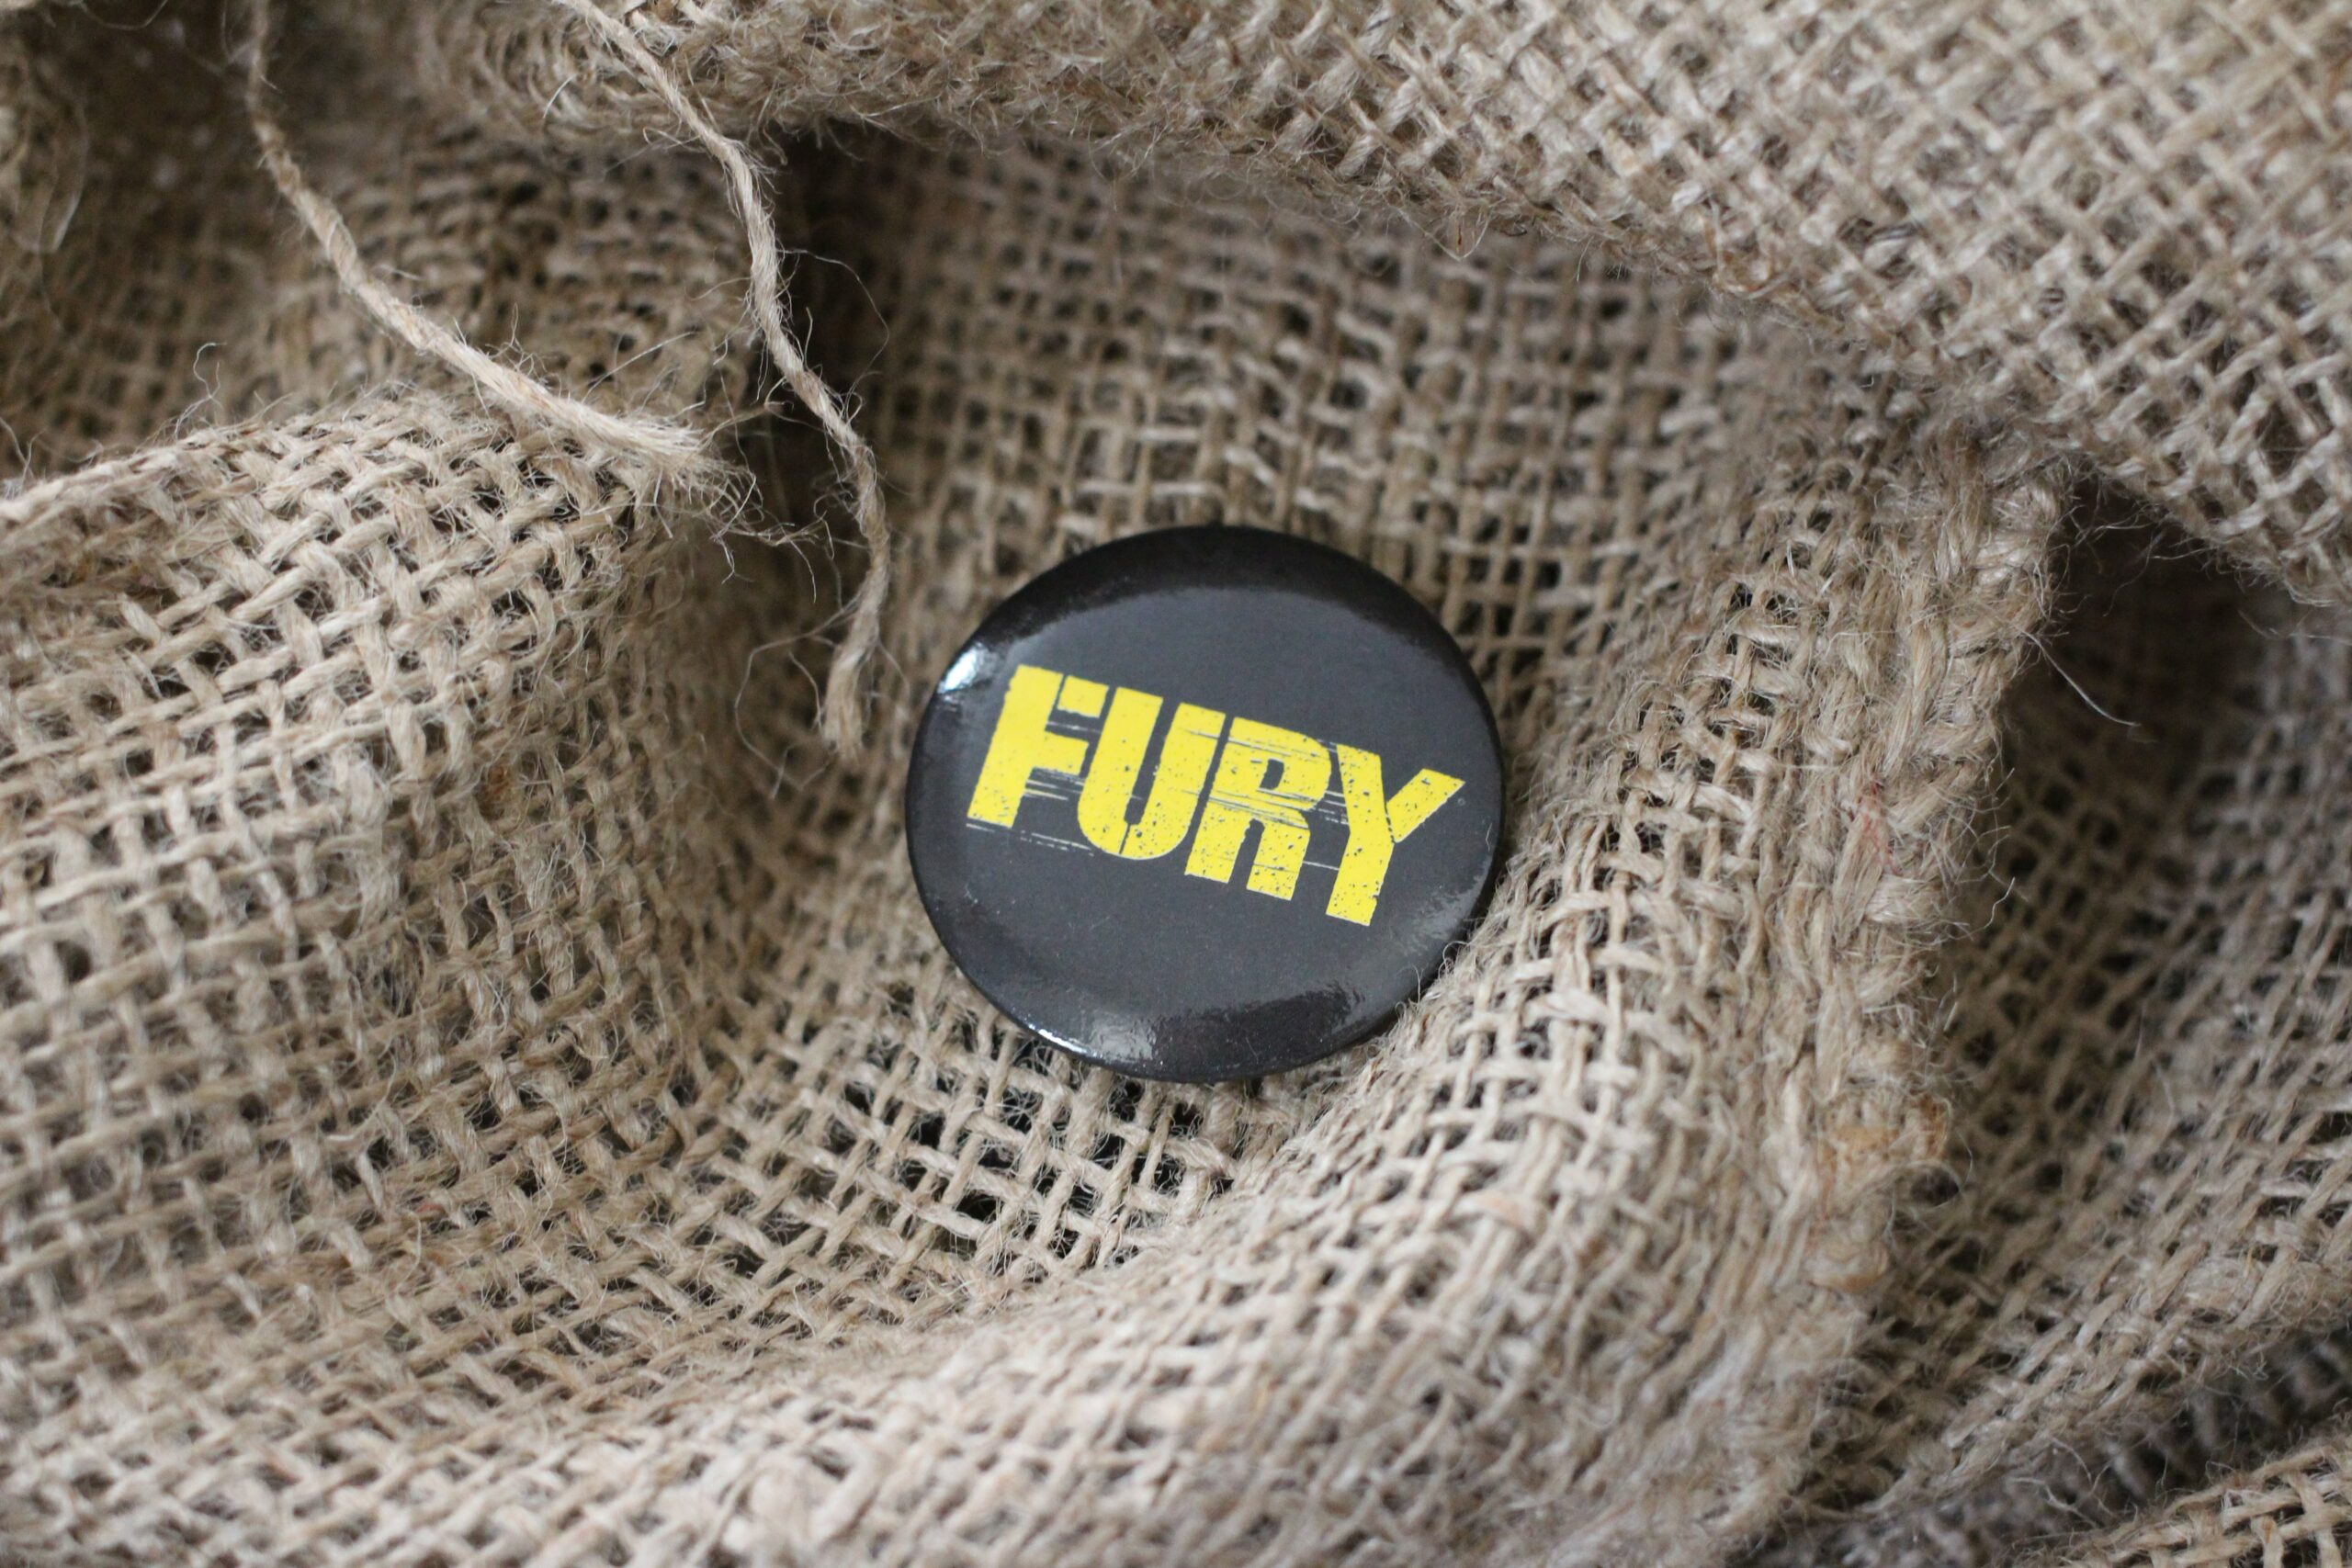 Goodie pour le film Fury réalisé par David Ayer avec Brad Pitt, Shia LaBeouf, Logan Lerman, Michael Peña, Jon Bernthal